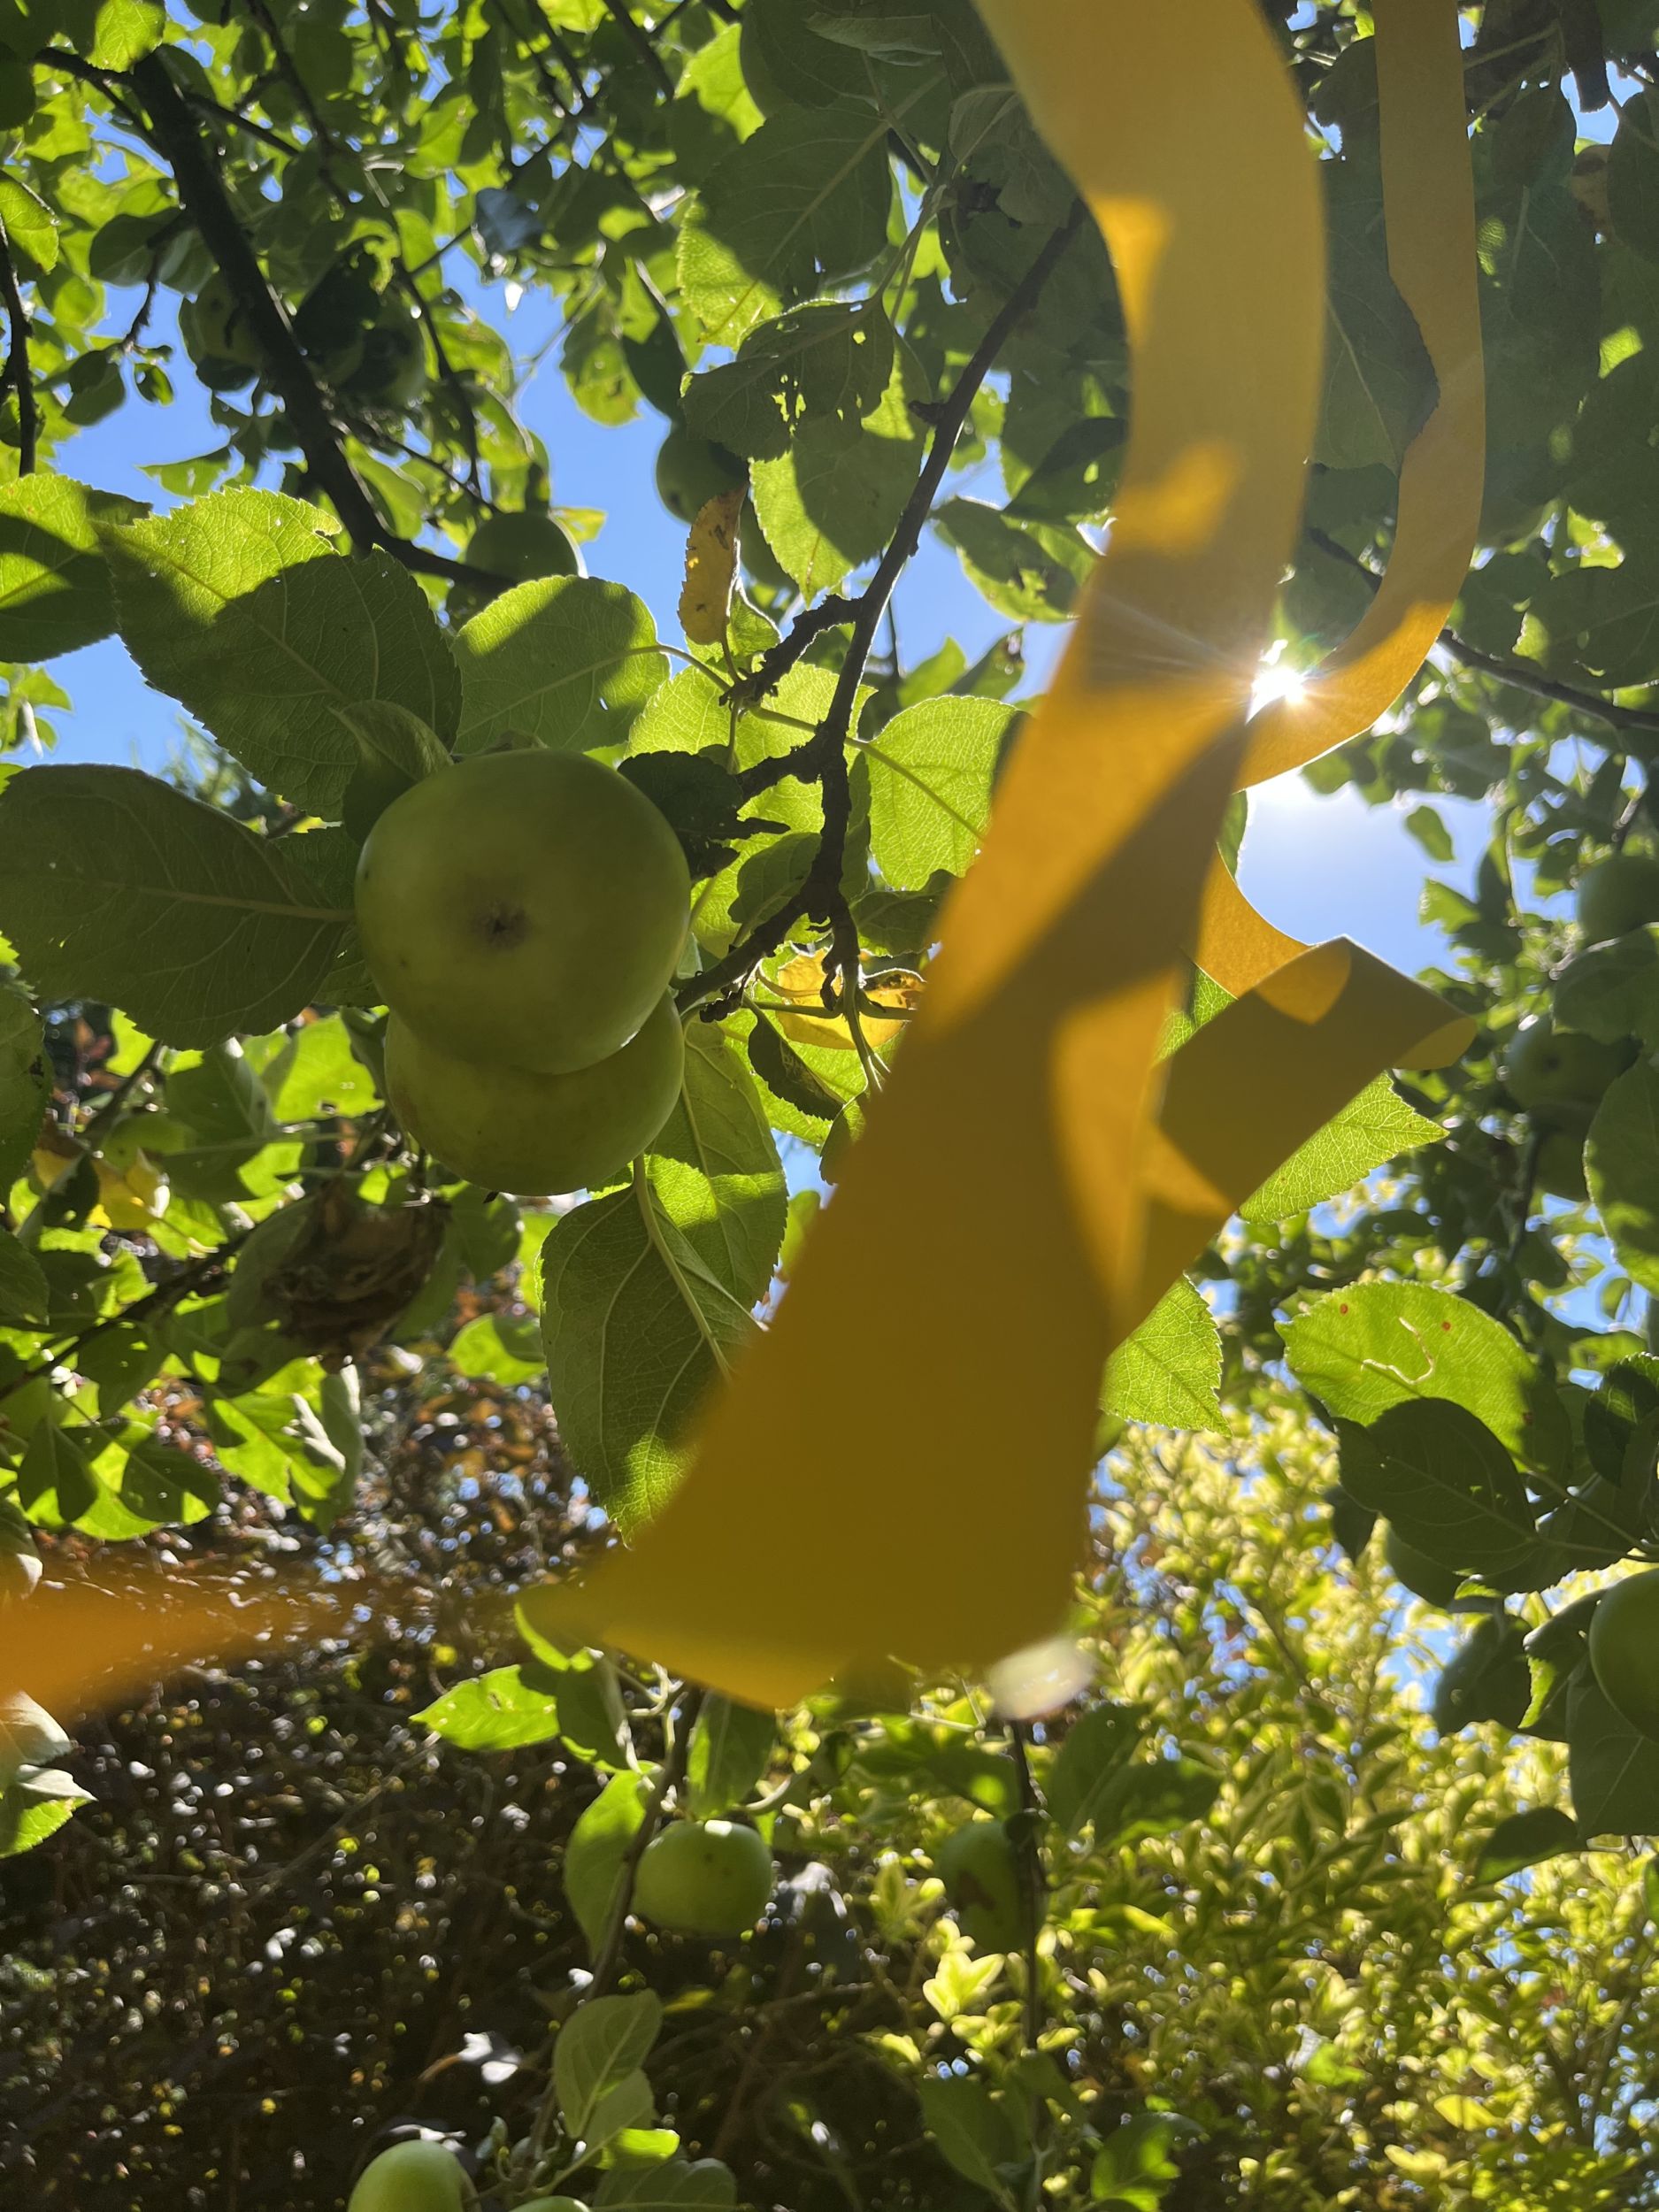 Obstbäume oder Sträucher einfach mit einem gelben Band markieren und so zum Ernten freigeben. Foto: Lahn-Dill-Kreis